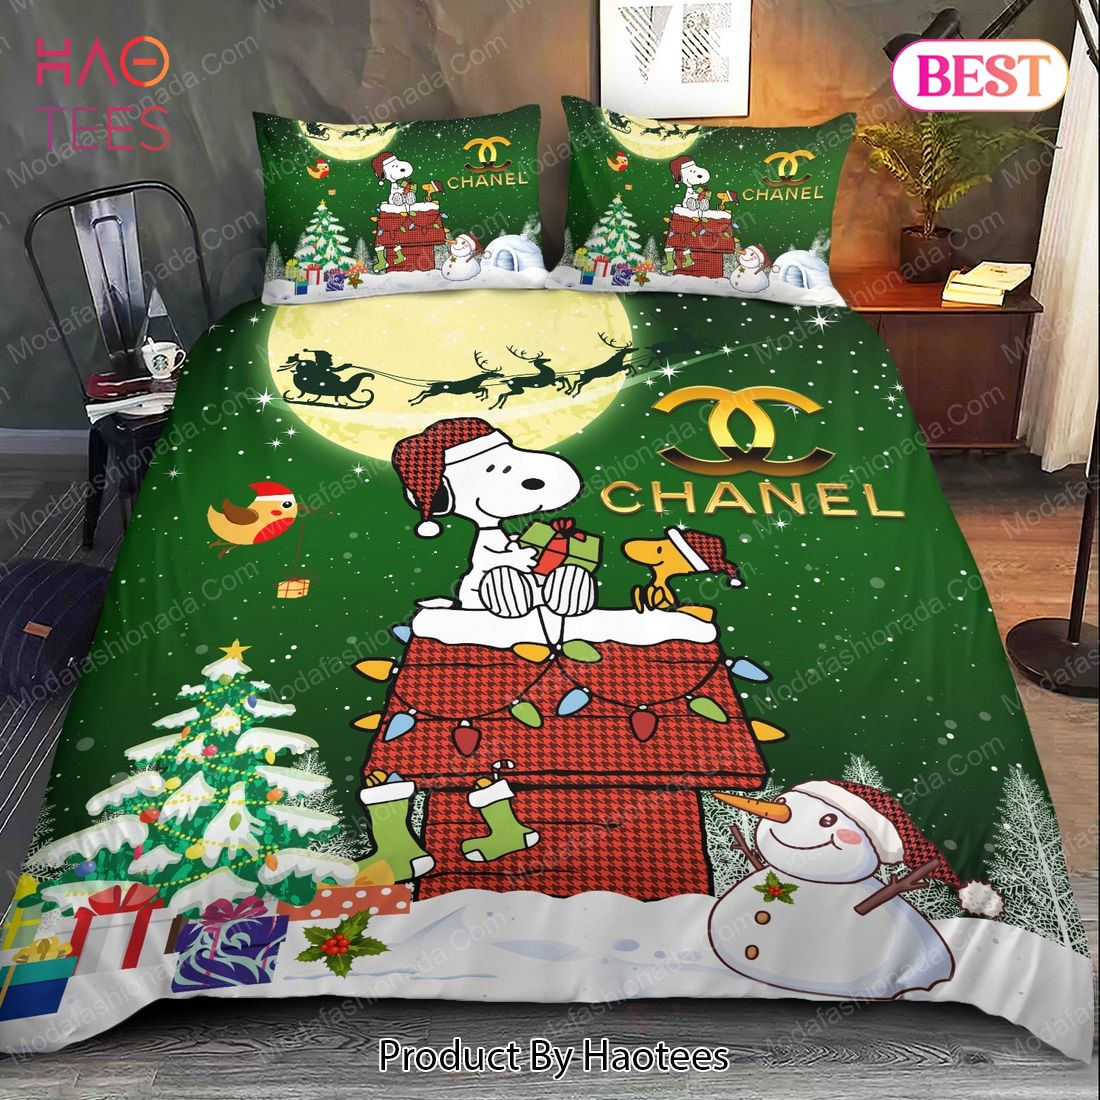 Buy Snoopy Dog Chanel Merry Christmas Bedding Sets Bed Sets, Bedroom Sets, Comforter Sets, Duvet Cover, Bedspread